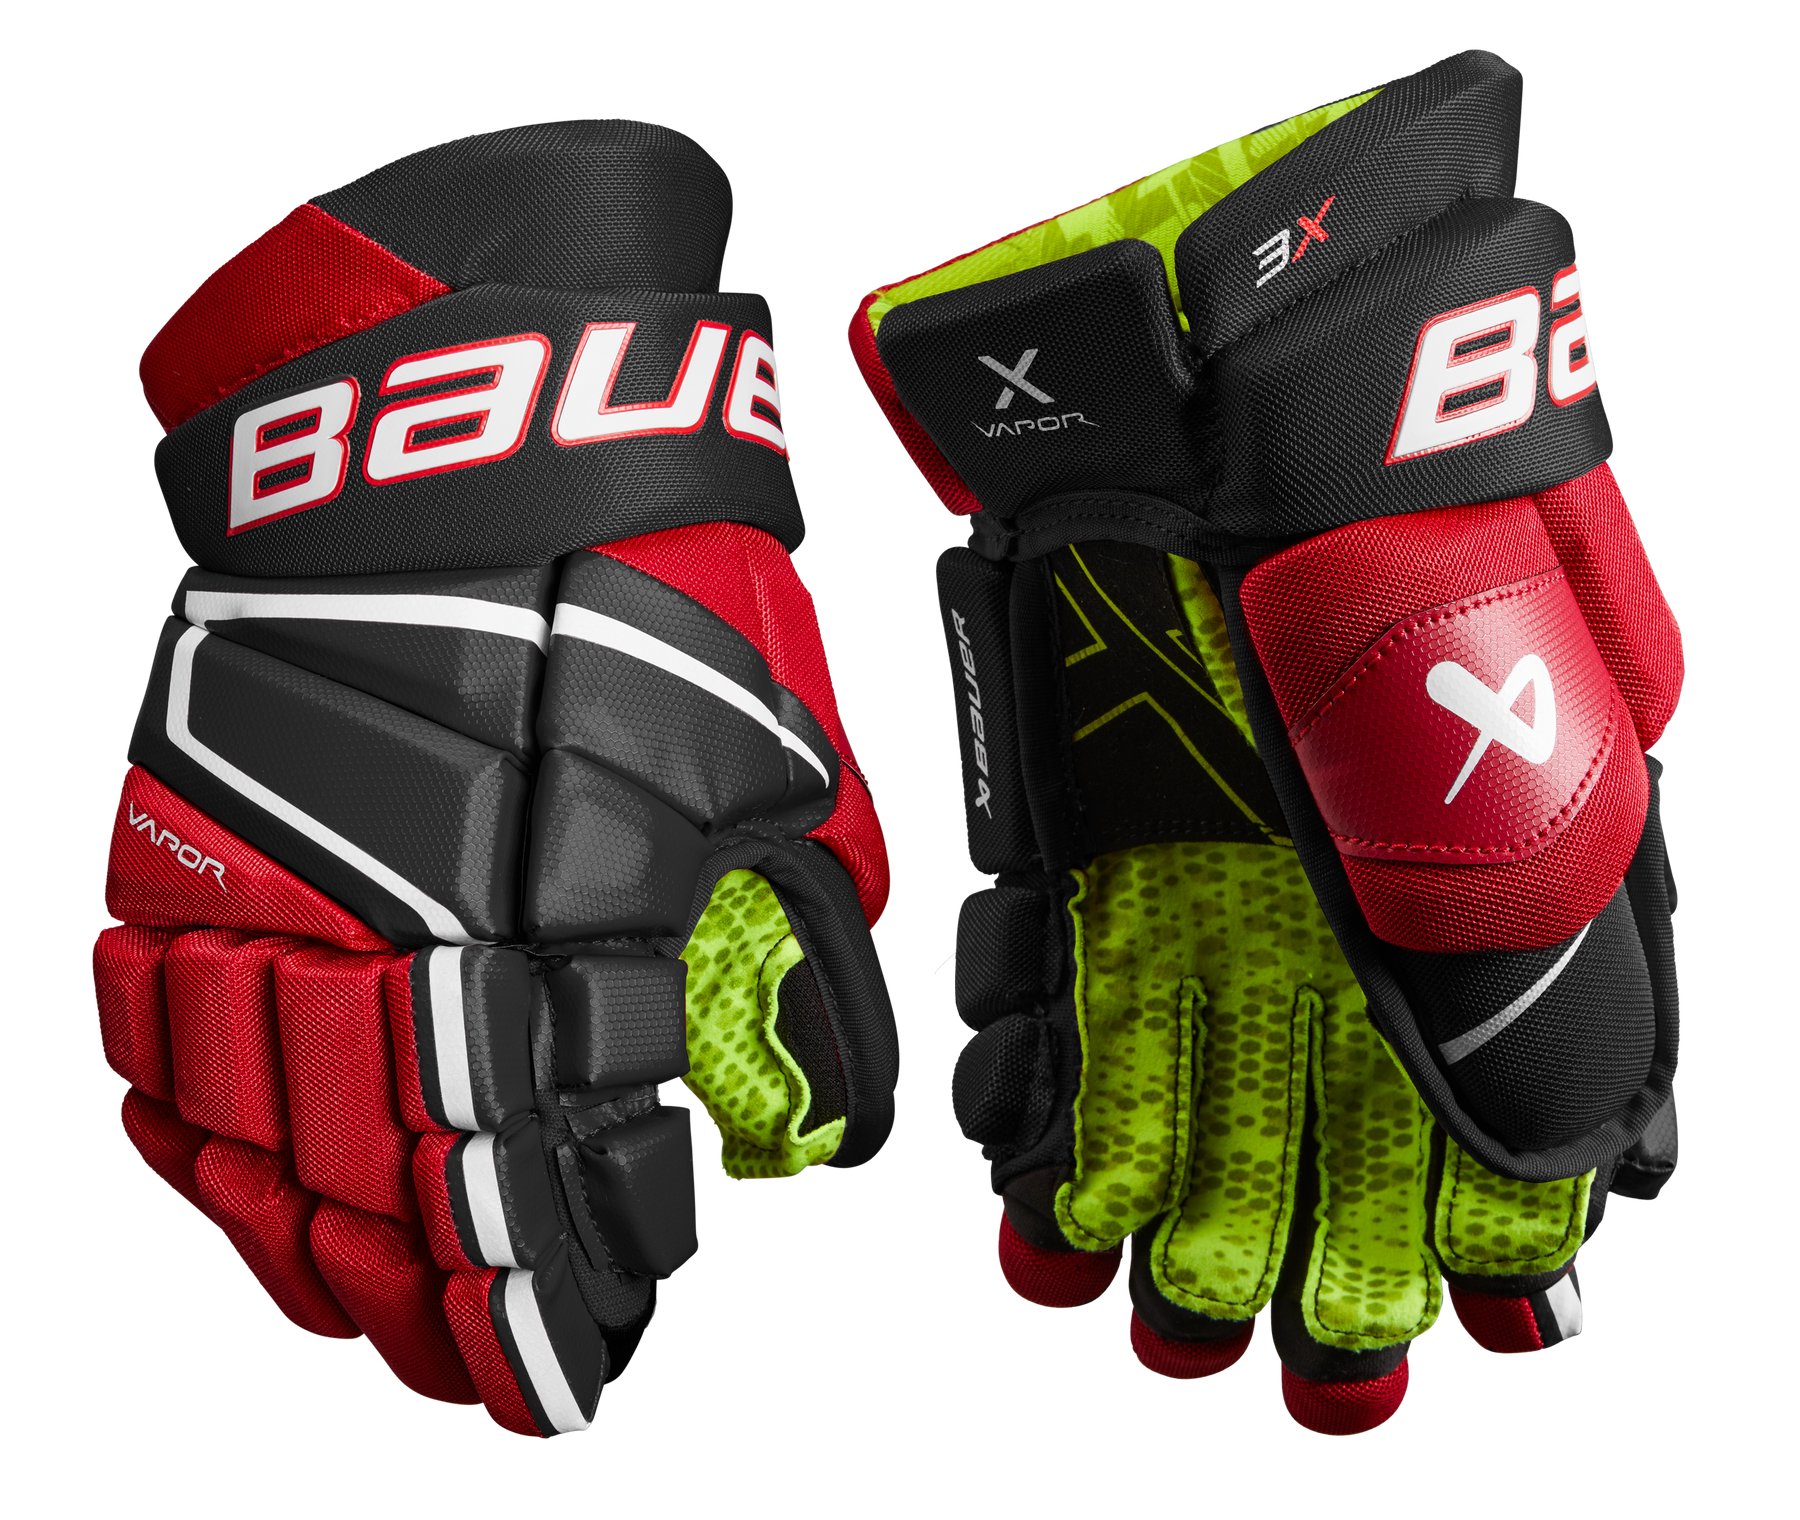 Bauer Vapor 3X Junior Hockey Gloves